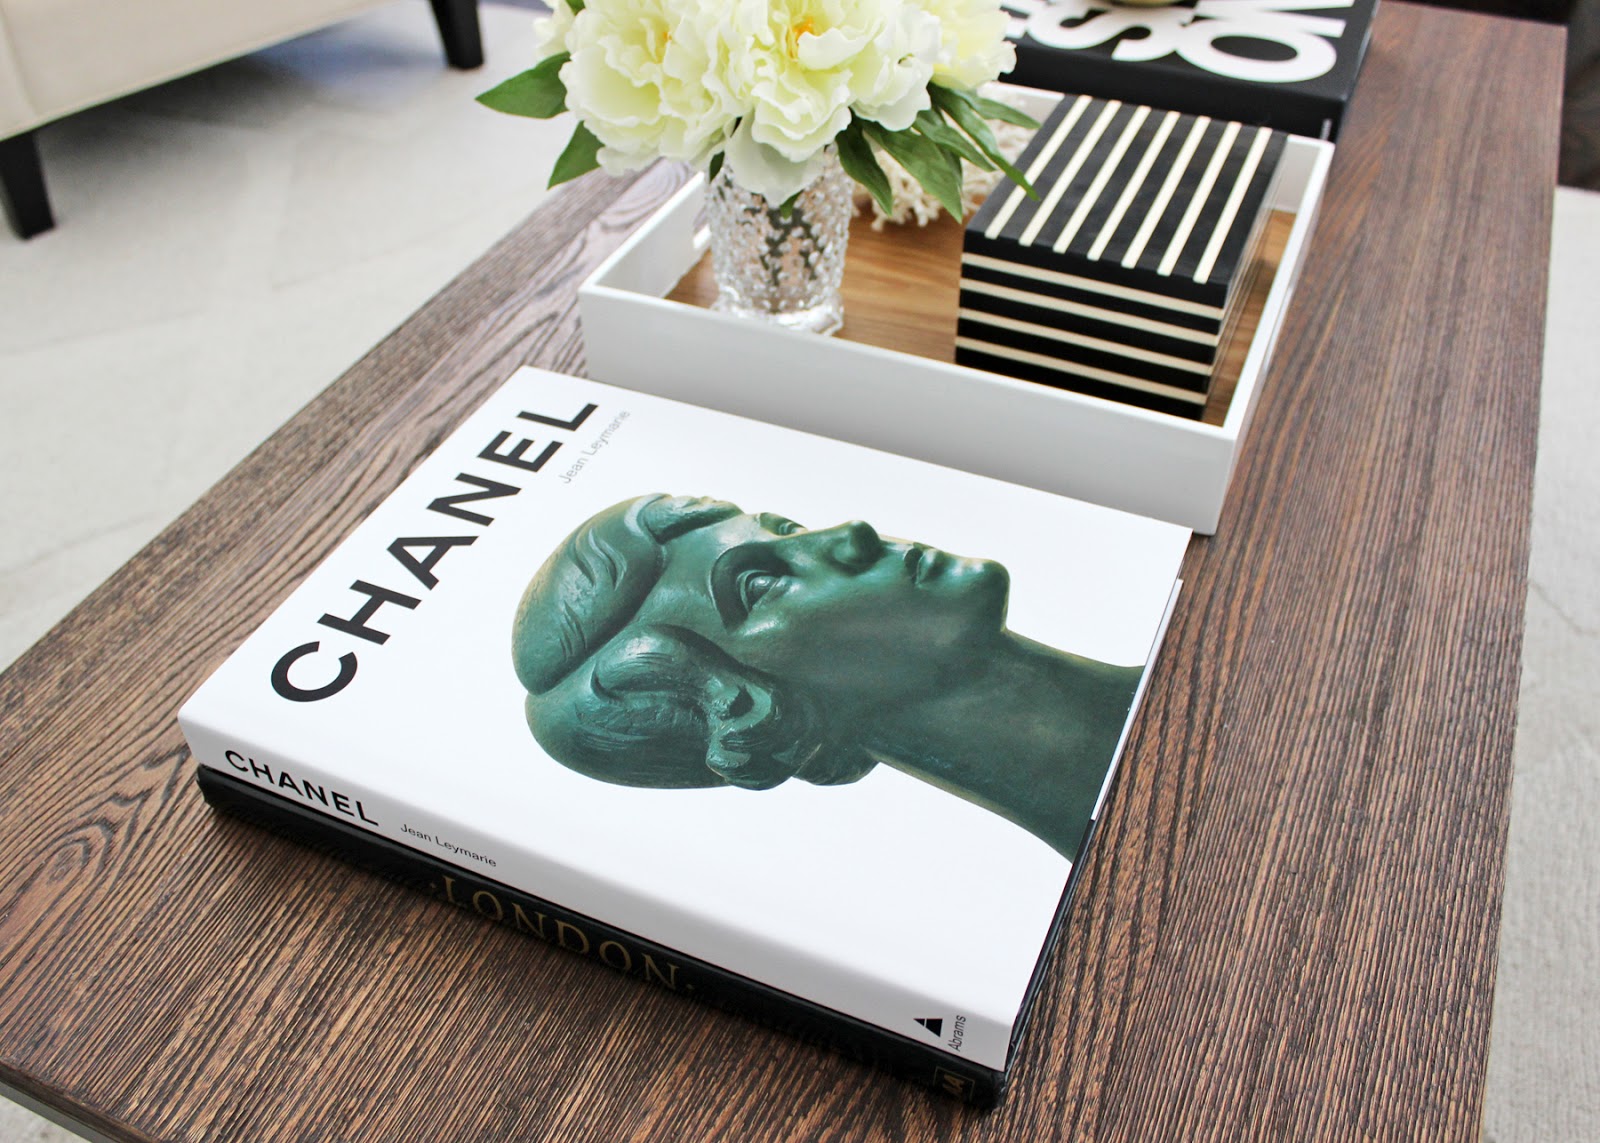 Chanel – Victoria's Interiors